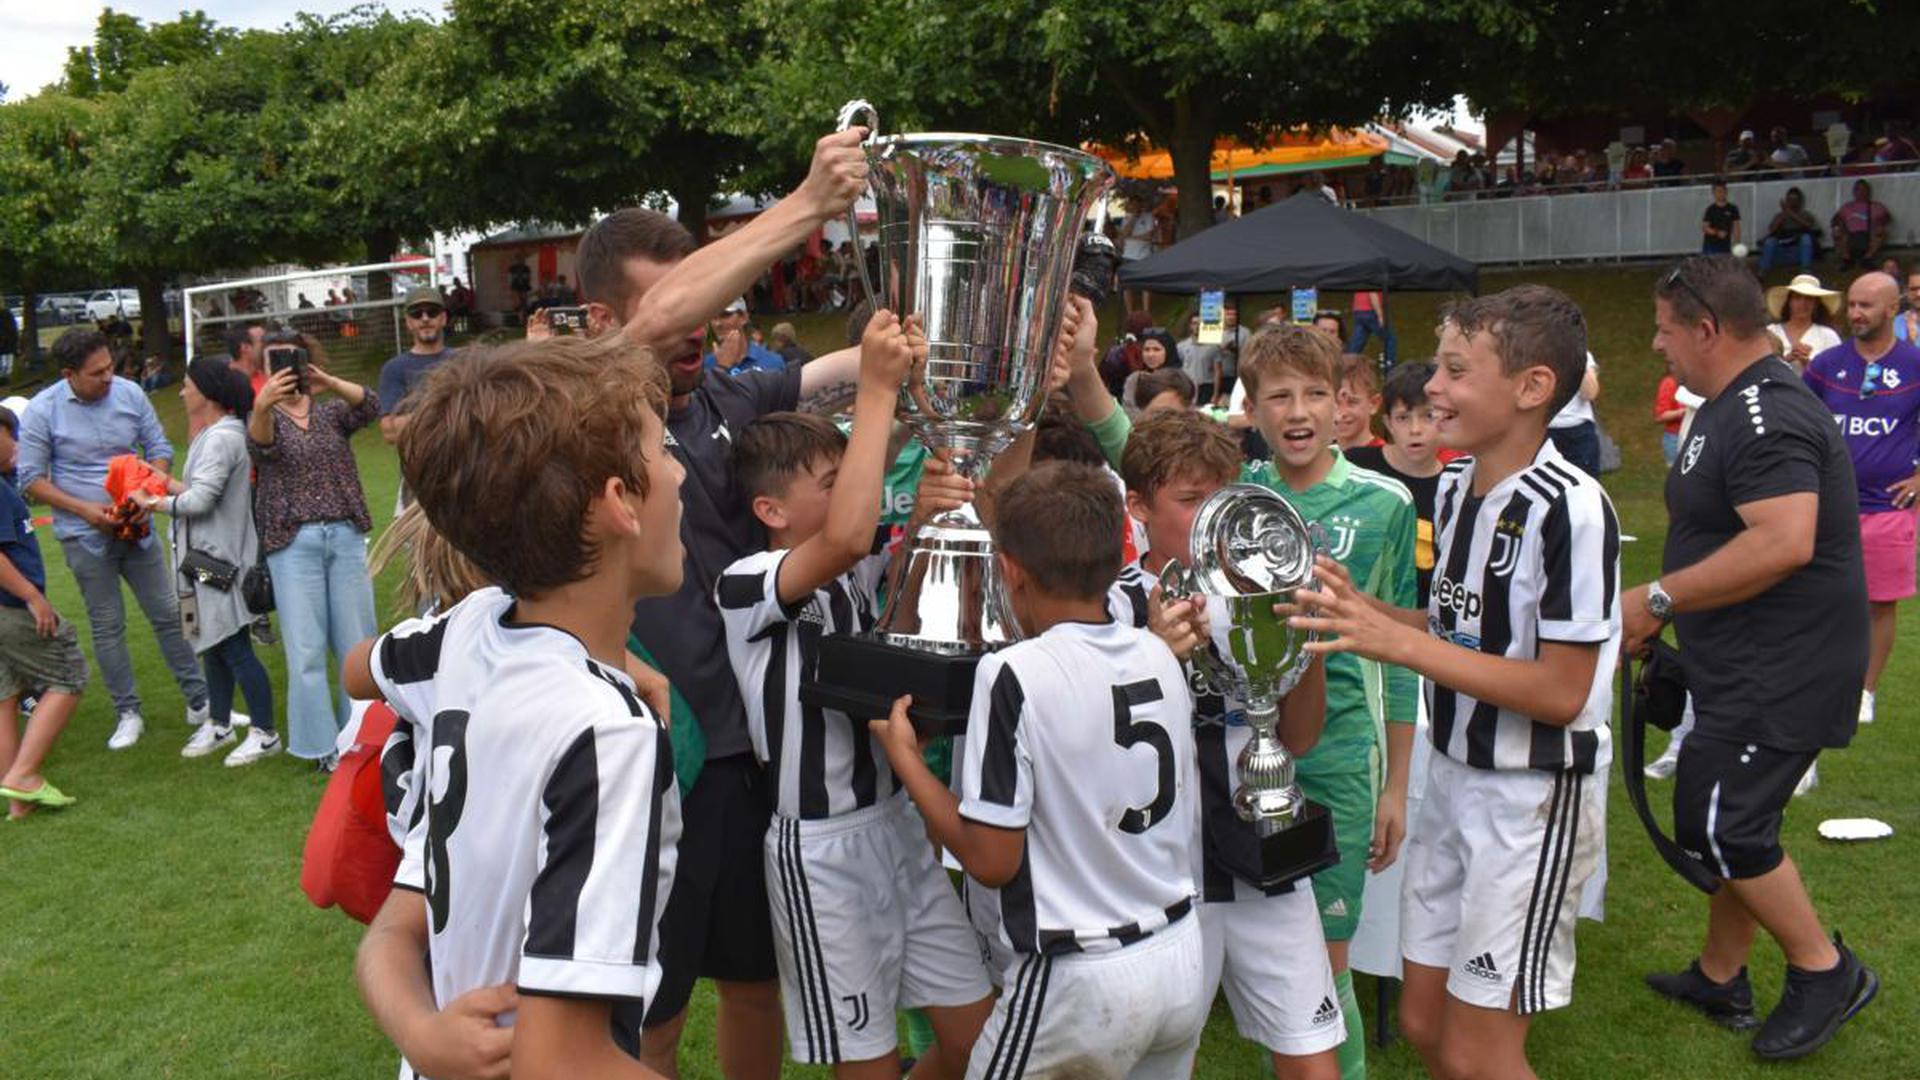 Italienische Nachwuchstalente im Glück gab es vergangenes Jahr bei der Champions Trophy, als die Fußballer von Juventus Turin den großen Pokal holten.